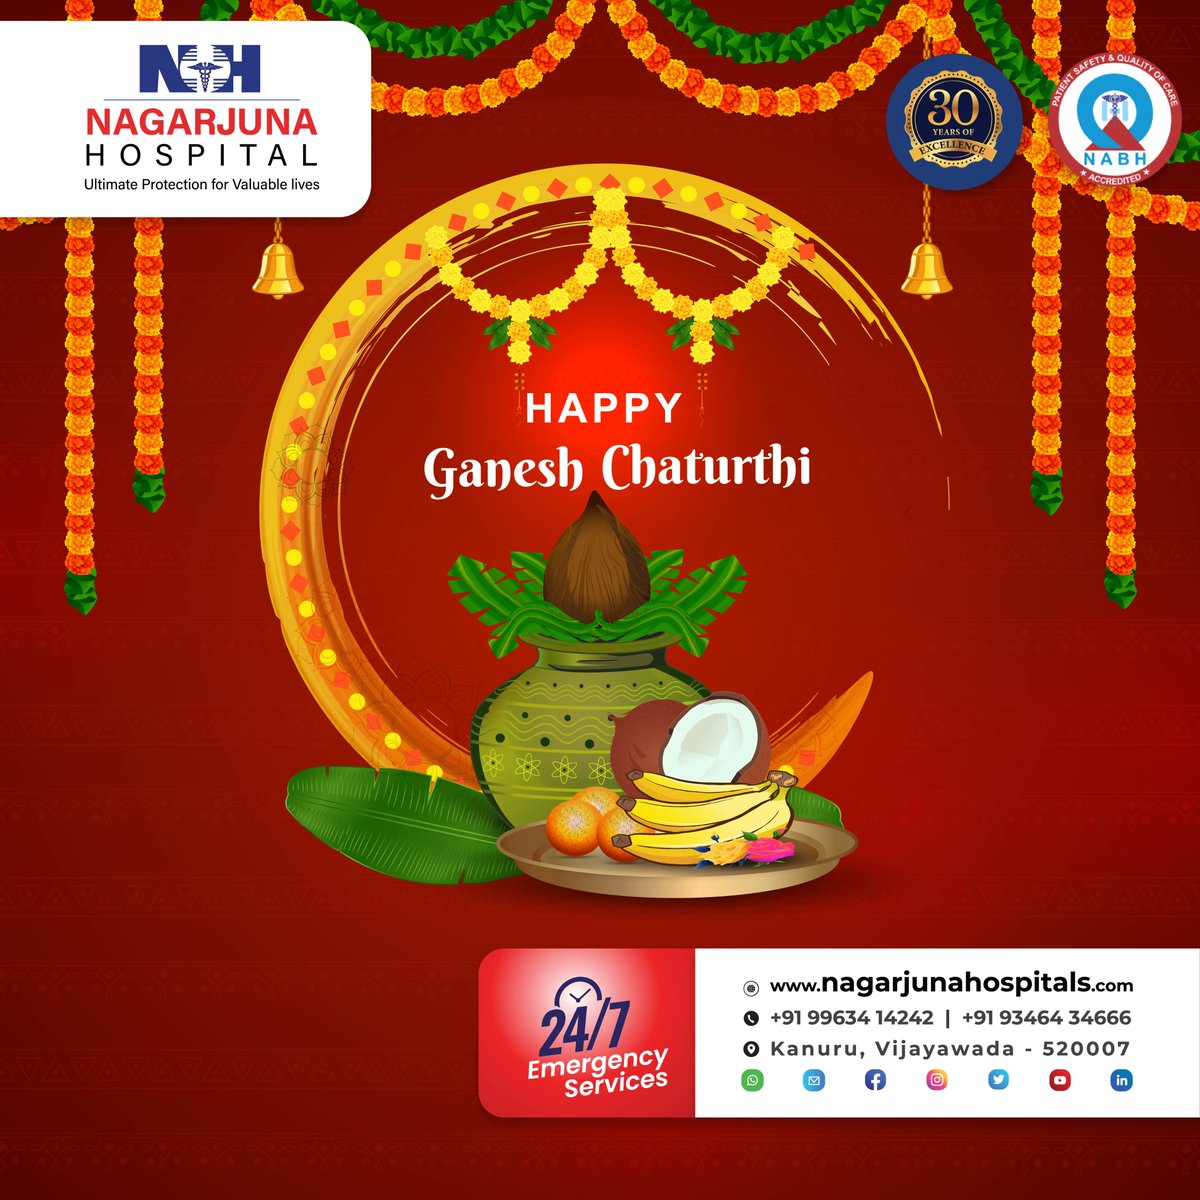 #GaneshChaturthi
#GaneshFestival
#LordGanesha
#GanpatiBappaMorya
#NagarjunaHospitals
#Healthcare
#Wellness
#CommunityCare
#FestivalOfHealth
#GaneshChaturthiCelebrations
#HealthyLiving
#MedicalCare
#HealthAndWellnes
#StayHealthy
#NagarjunaCares
#GaneshChaturthiWishes
#HealthForAll